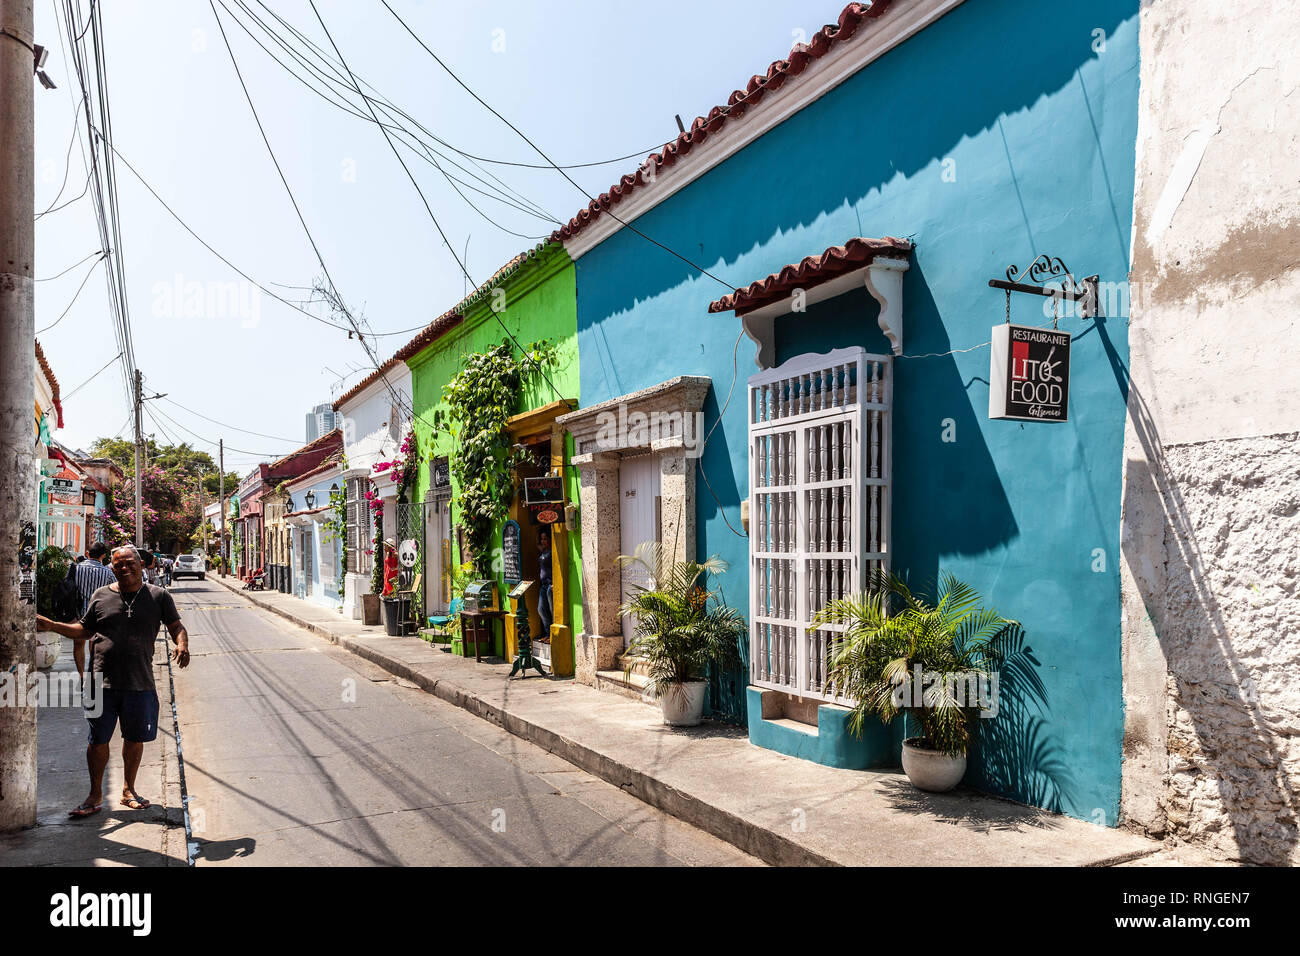 Calle del Pozo, Barrios Getsemaní, Cartagena de Indias, Colombia. Stock Photo